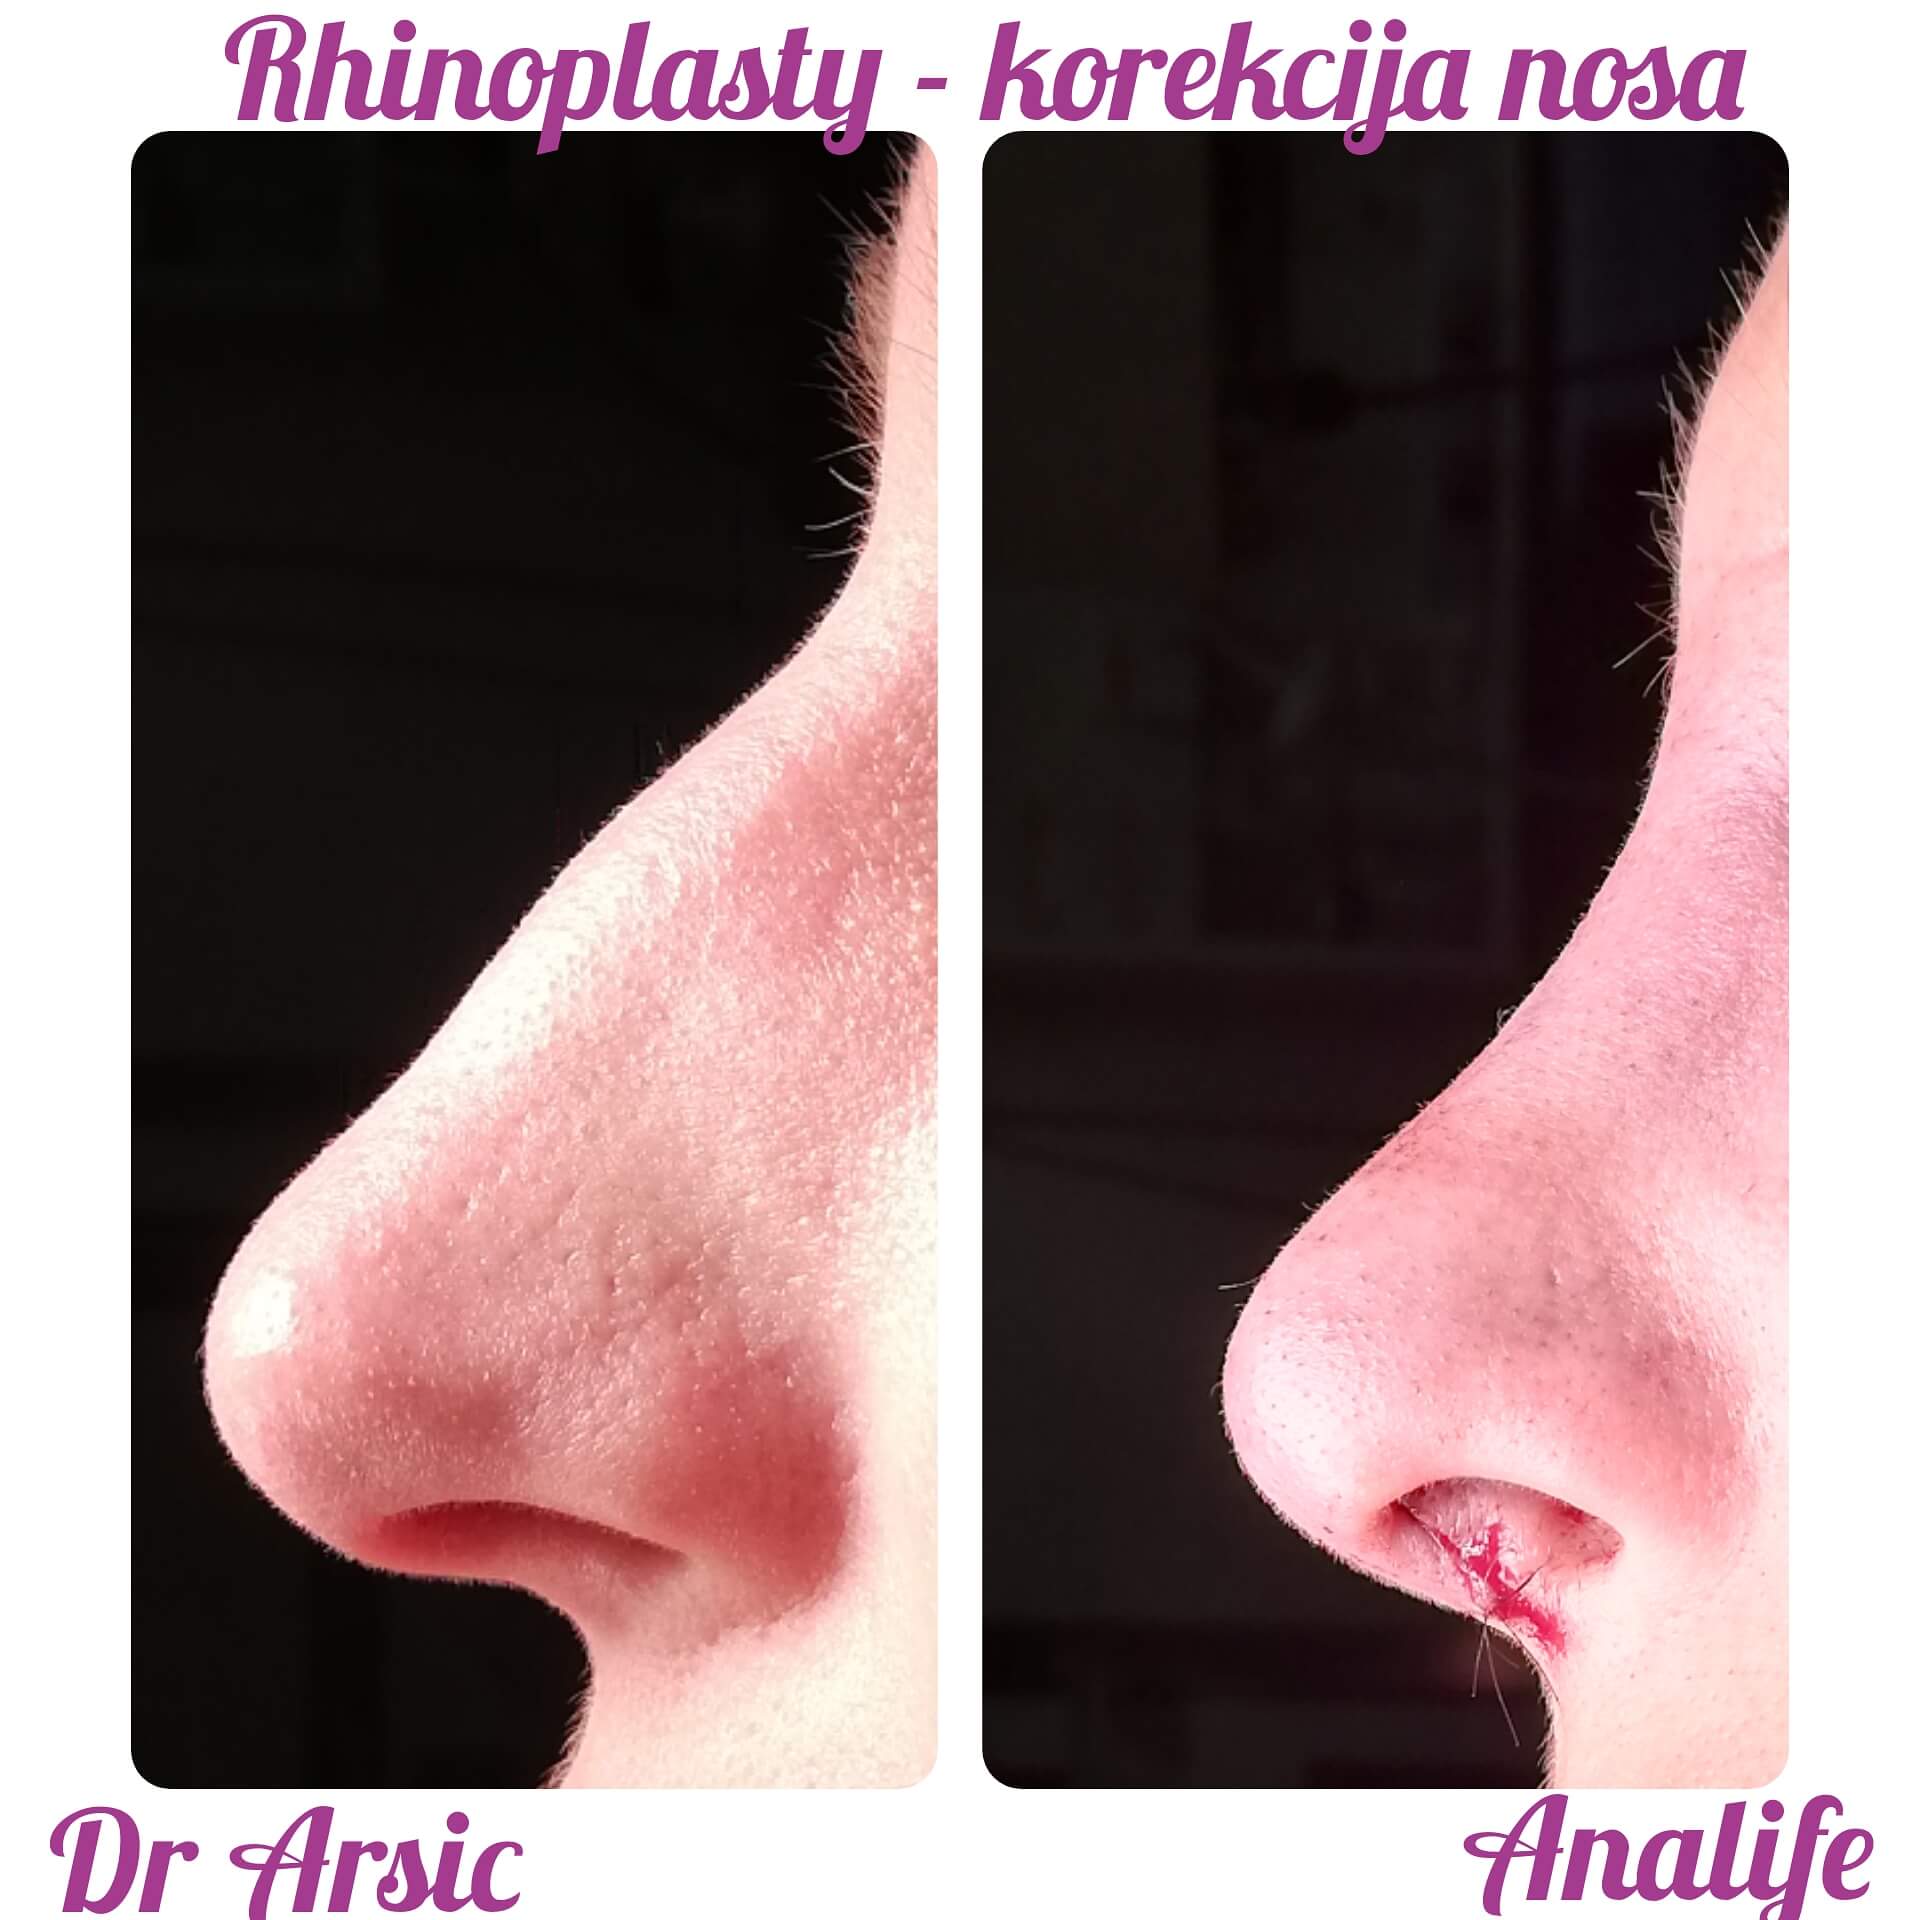 Estetska korekcija nosa je jedna od najzahtevnijih operacija jer se jasno uočava promena koja znatno doprinosi poboljšanju izgleda